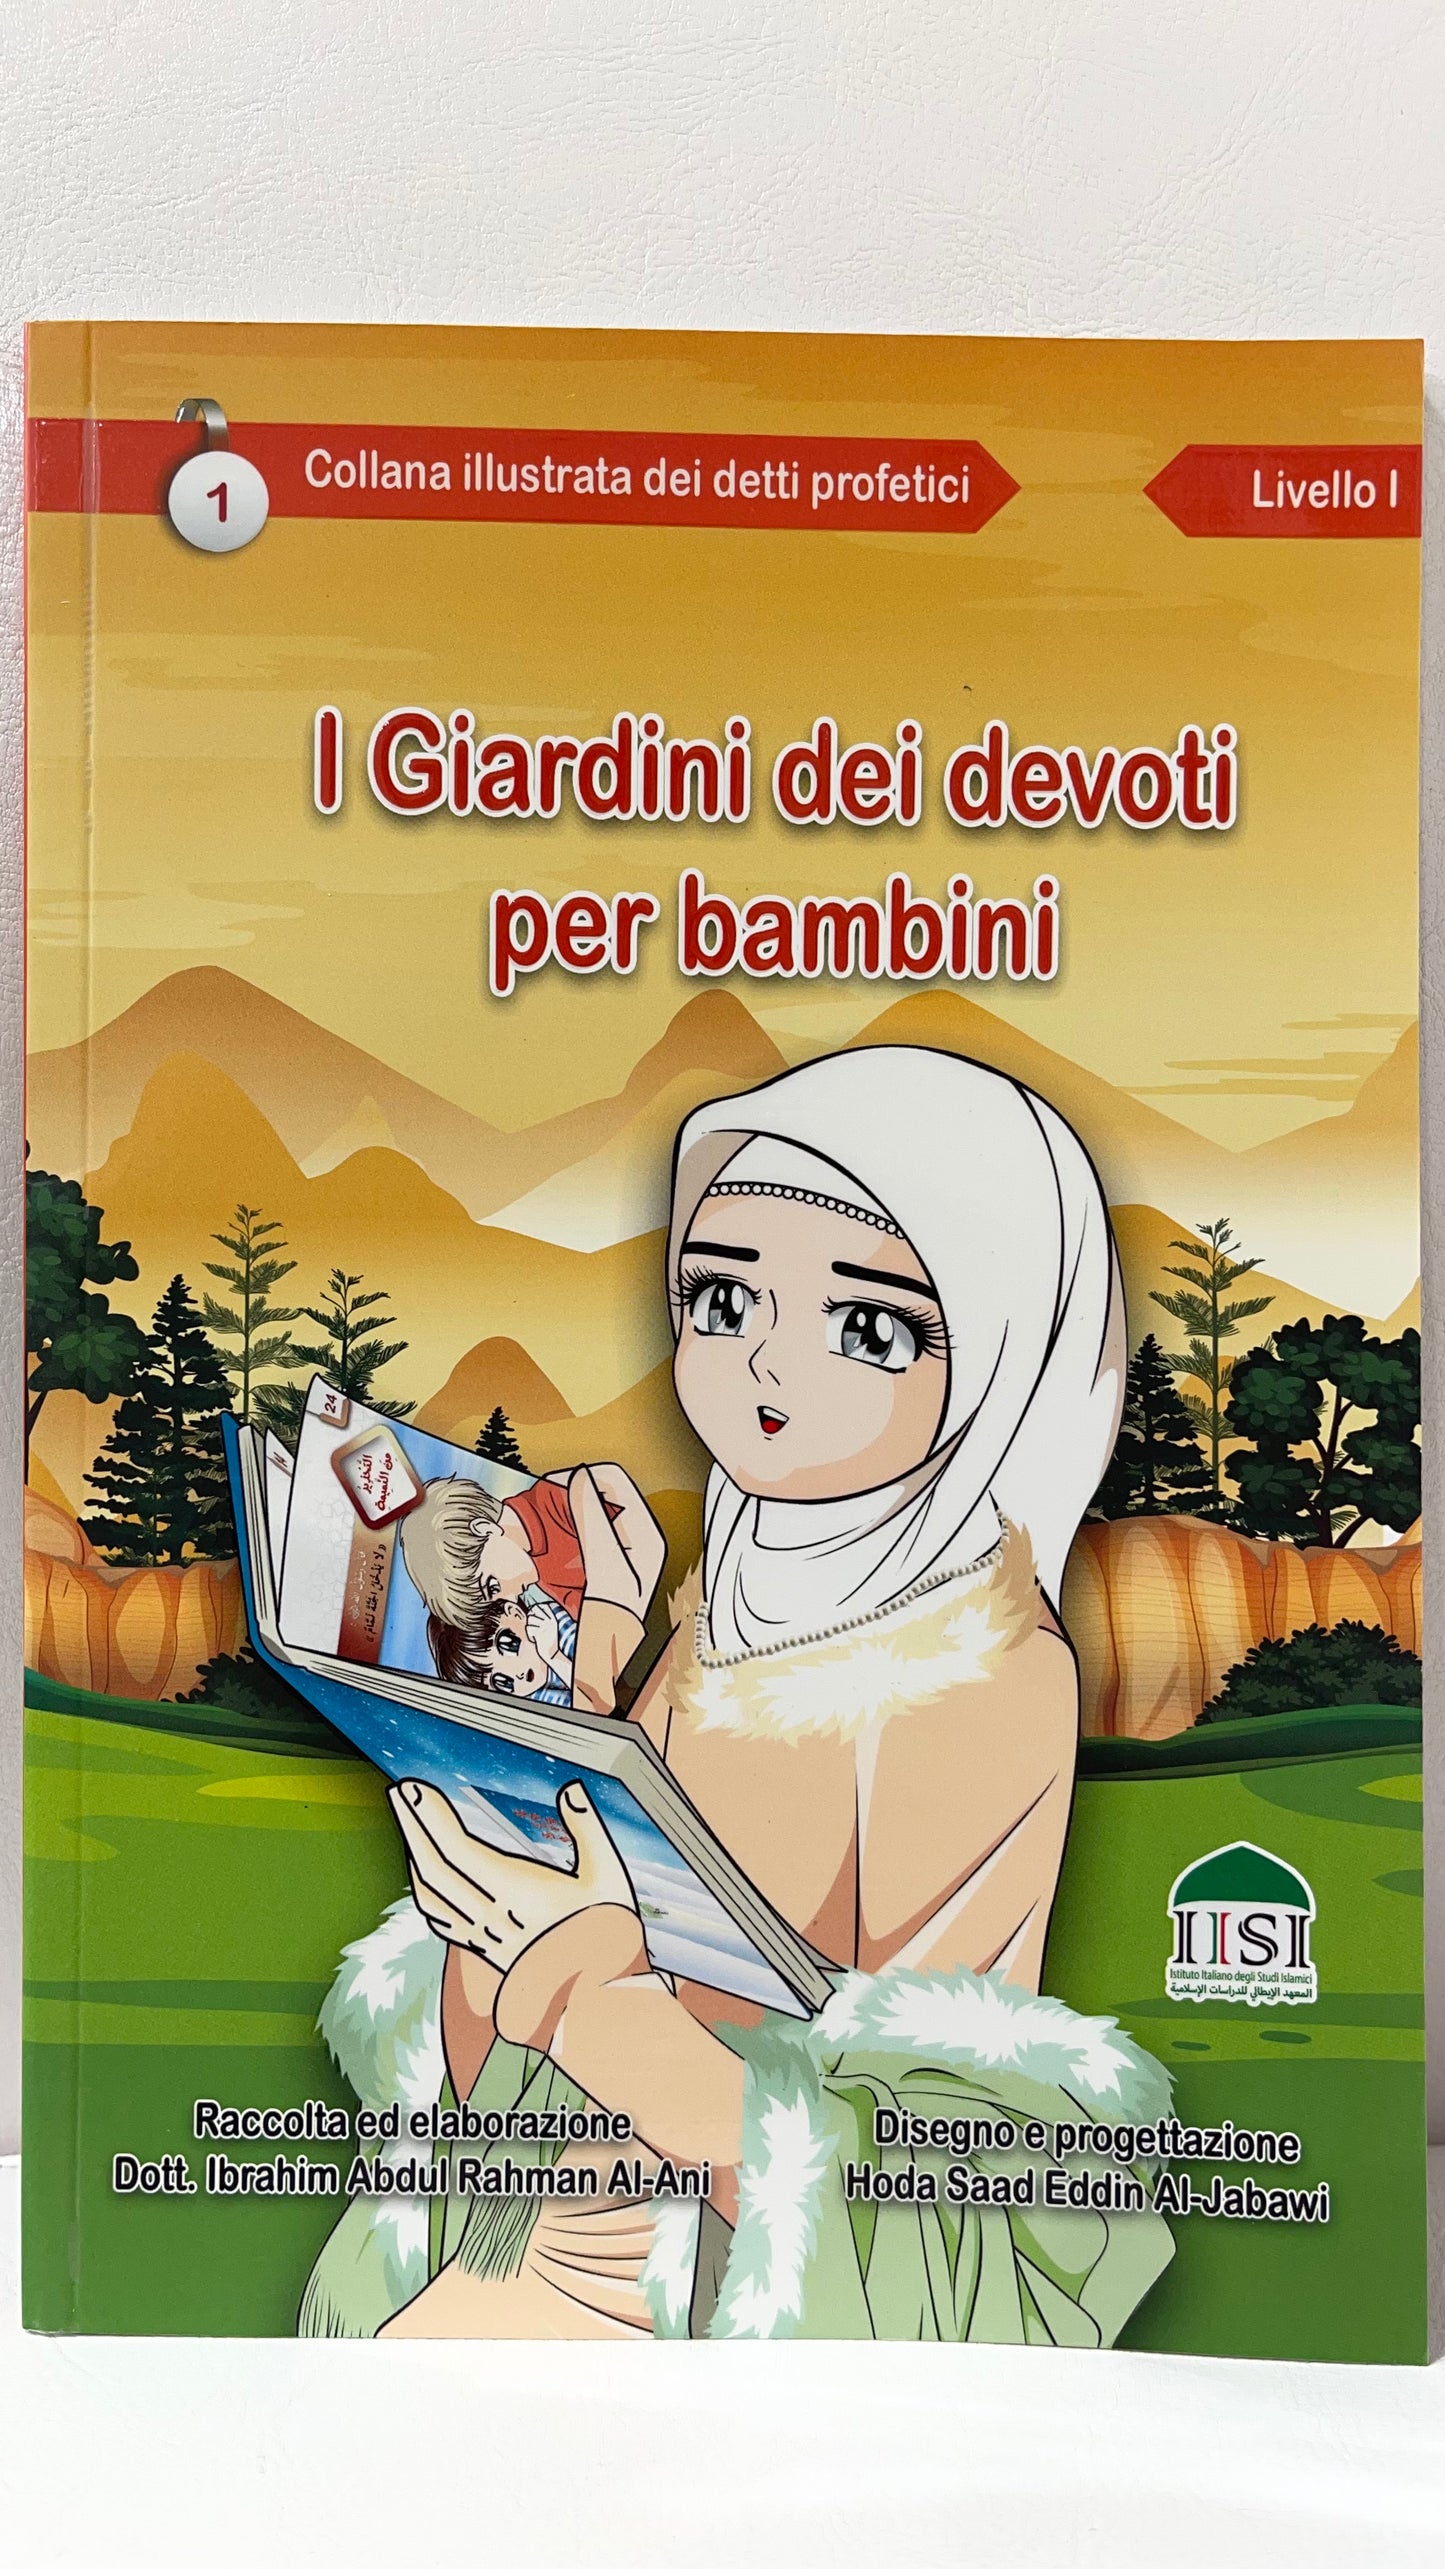 Giardini dei devoti illustrati per bambini in italiano